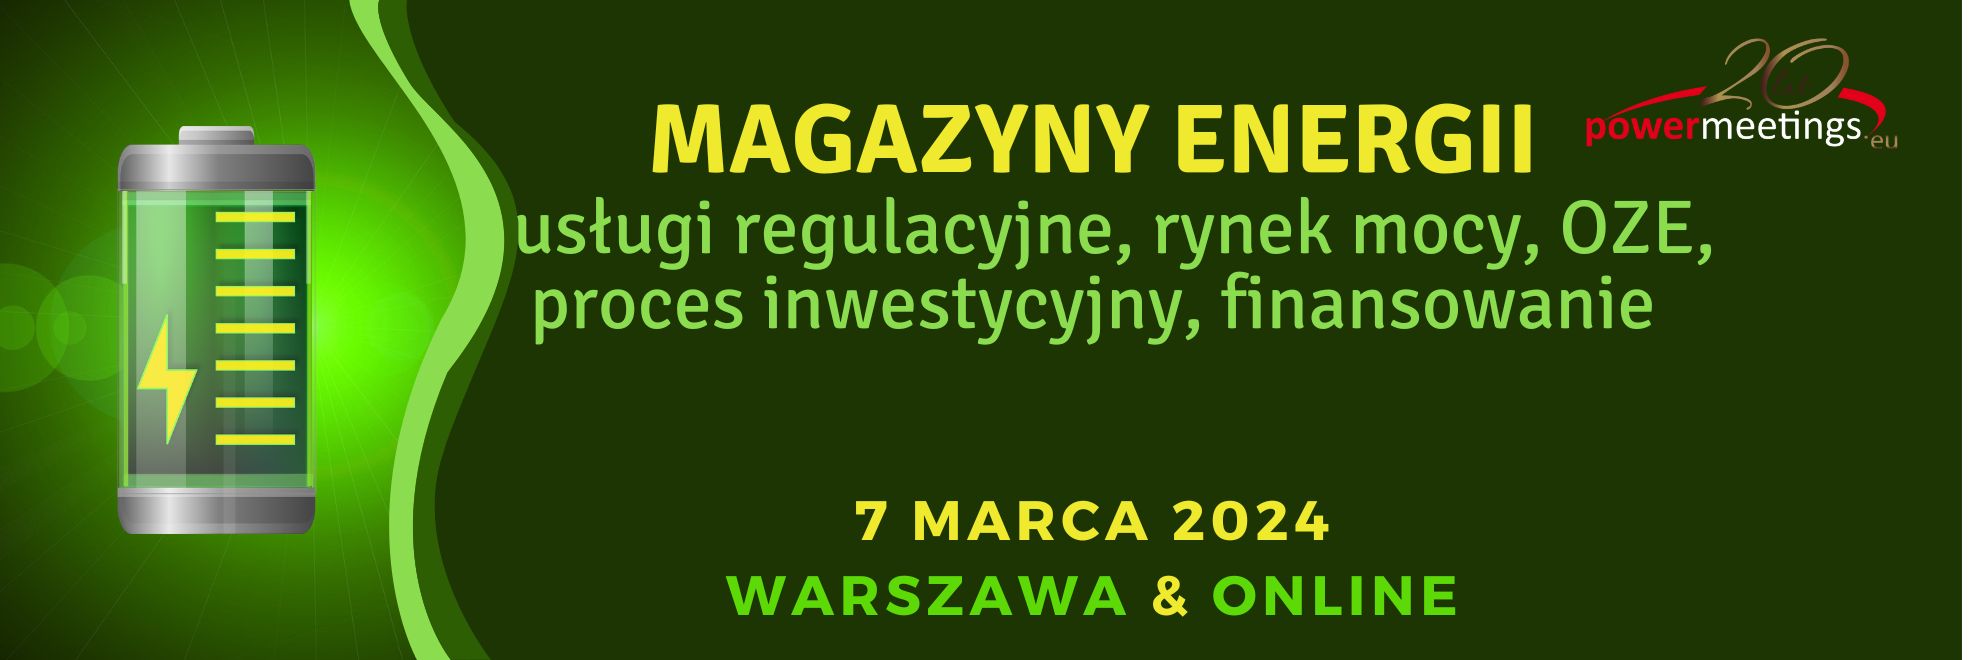 Magazyny energii 2024 – usługi regulacyjne, rynek mocy, OZE, proces inwestycyjny, finansowanie